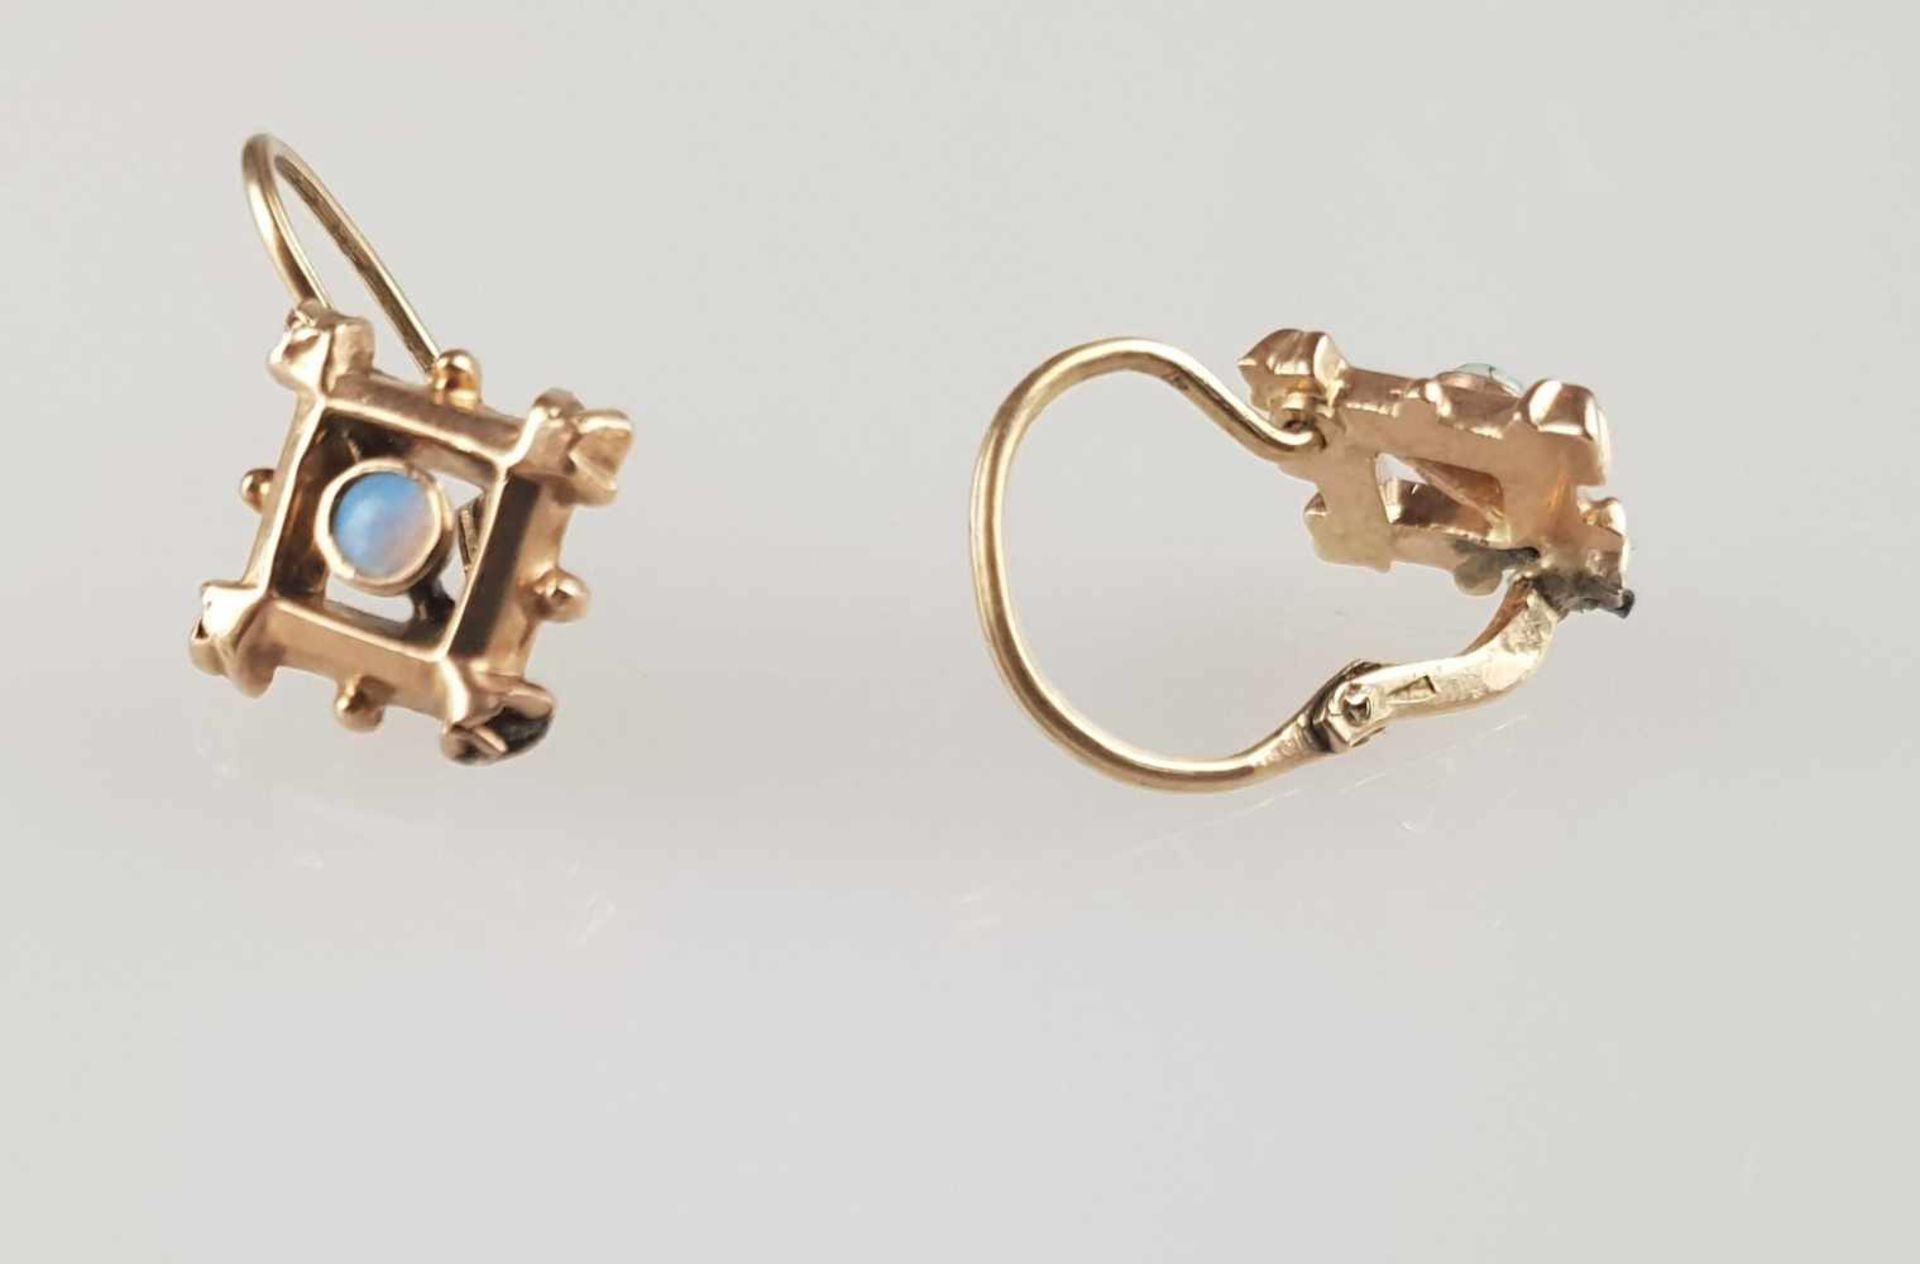 Zwei Paar Biedermeier-Ohrringe - Gold 14 Karat, punziert 585, Steinbesatz: kleine Opalcabochons - Bild 3 aus 3